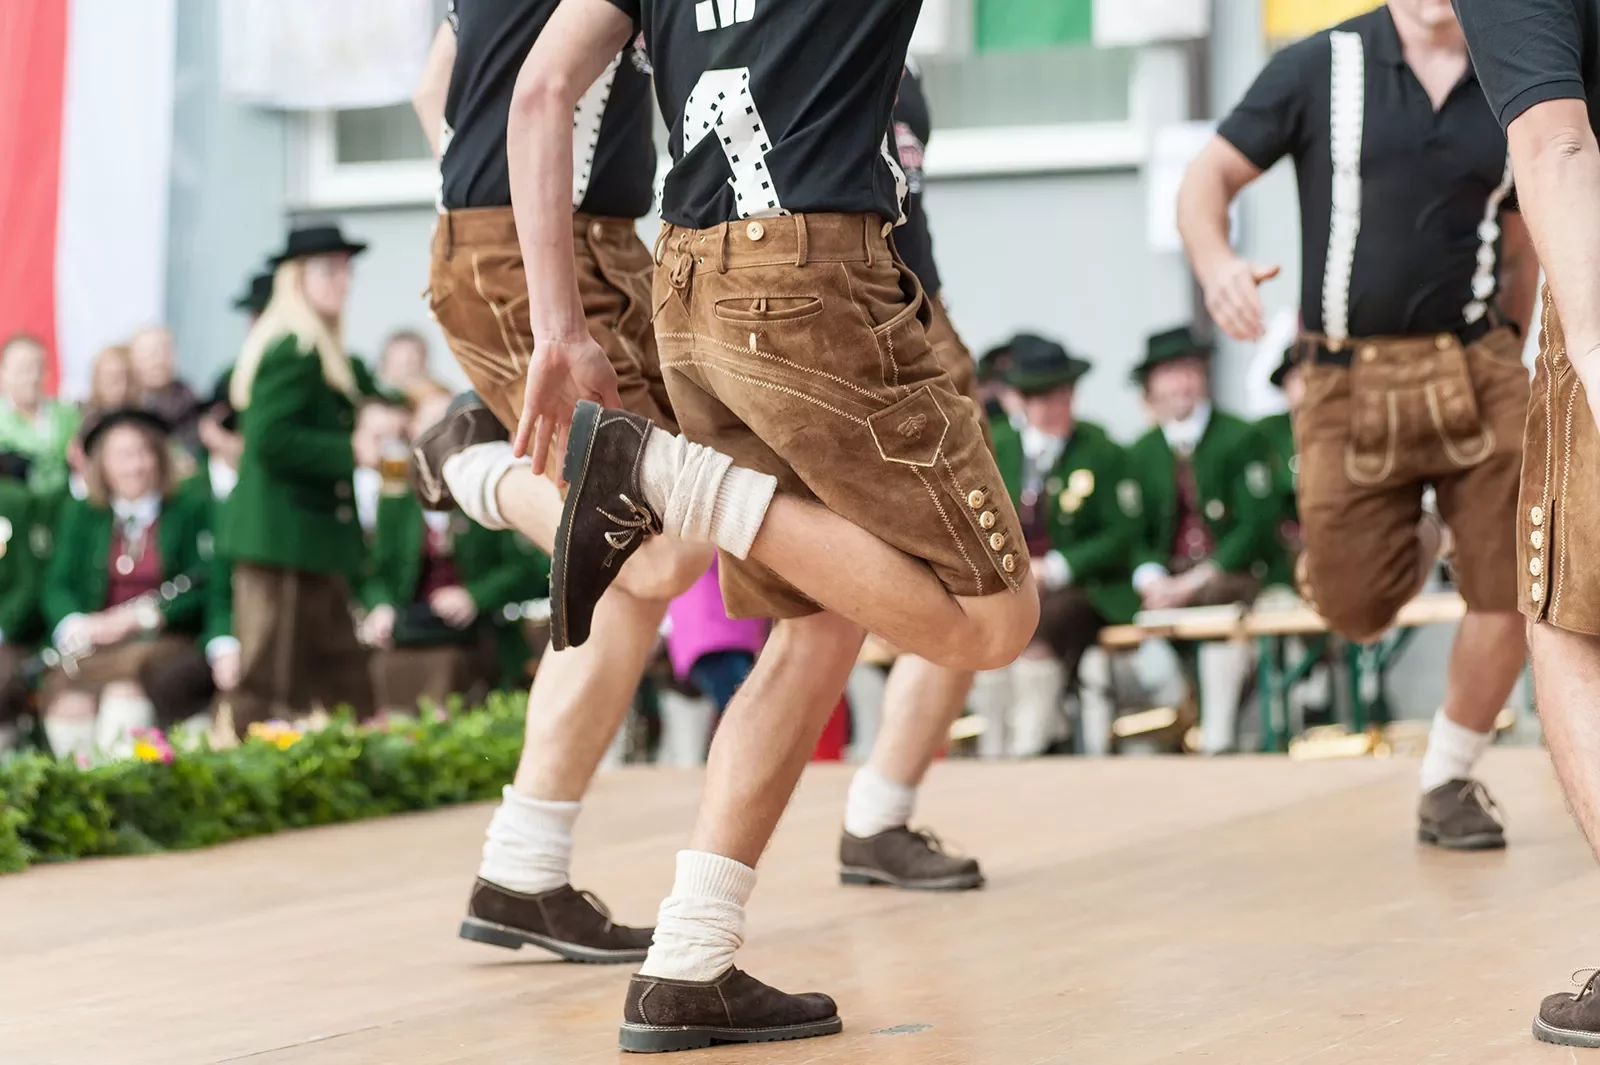 Young men doing an Austrian traditional folk dance.